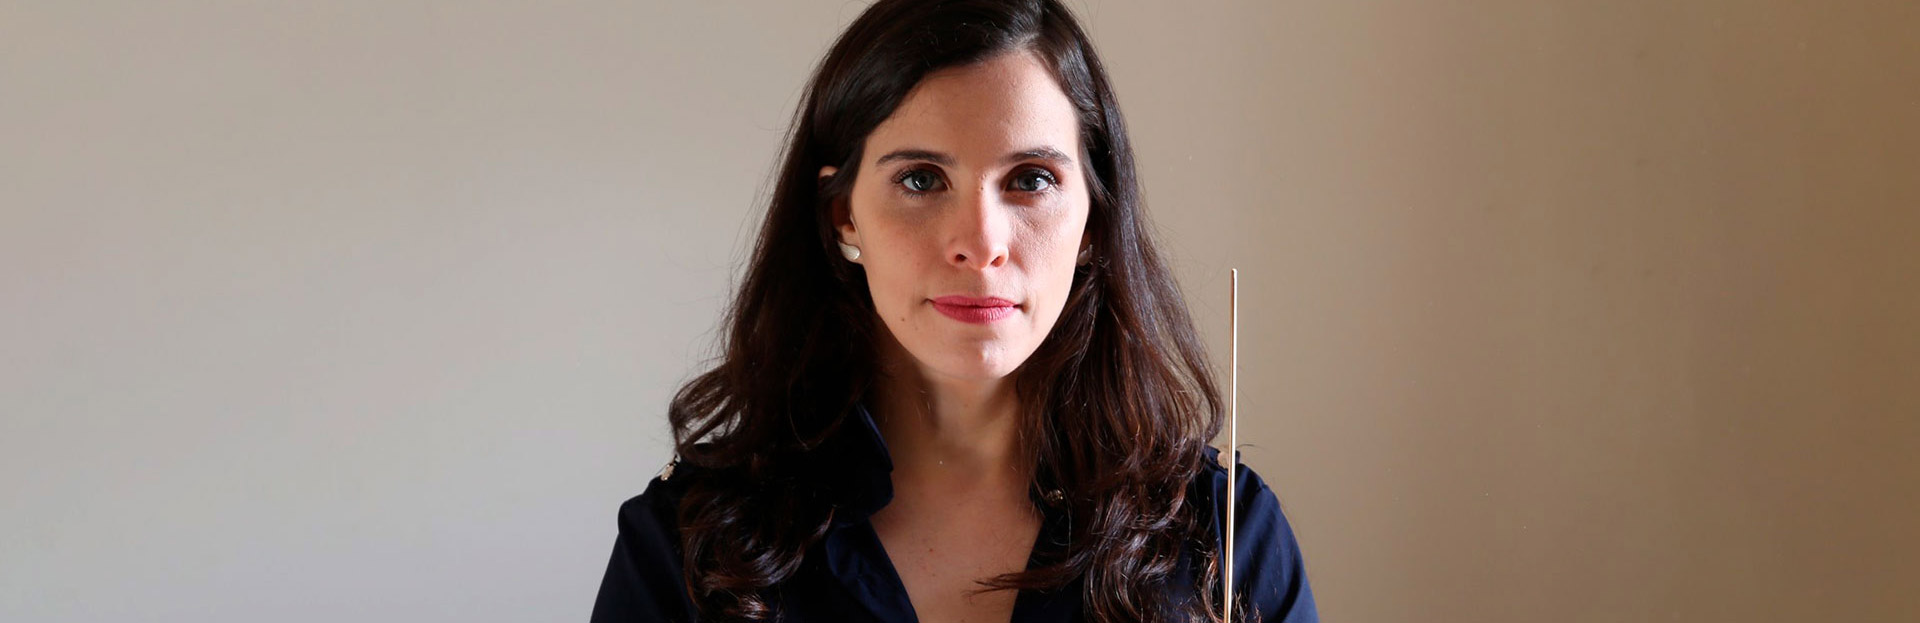 Mariana Rosas, egresada del Departamento de Artes Musicales y Sonoras - UNA, nombrada directora del Coro Sinfónico de Londres